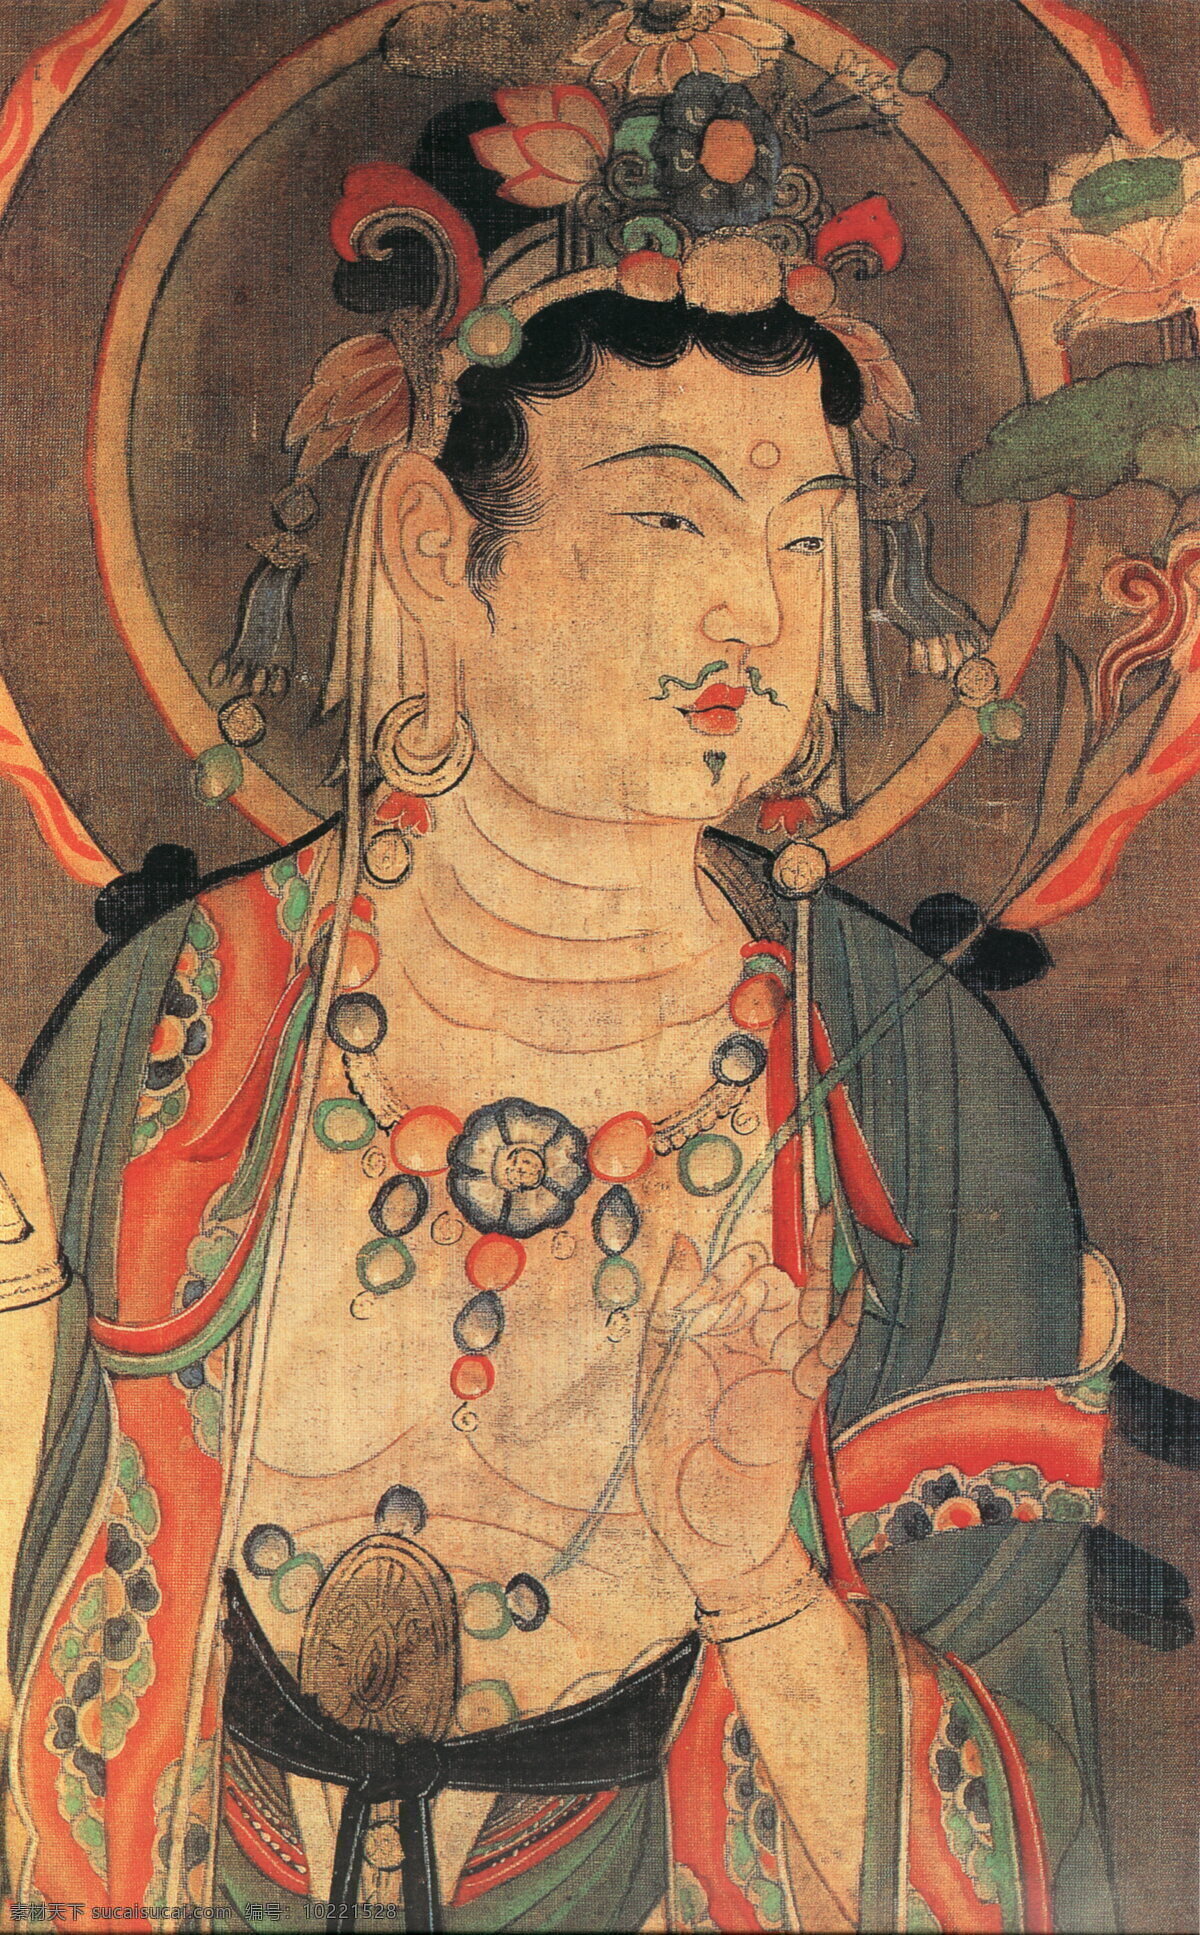 引路 菩萨 图 引路菩萨图 神仙佛像 中国古画 设计素材 古典藏画 书画美术 棕色